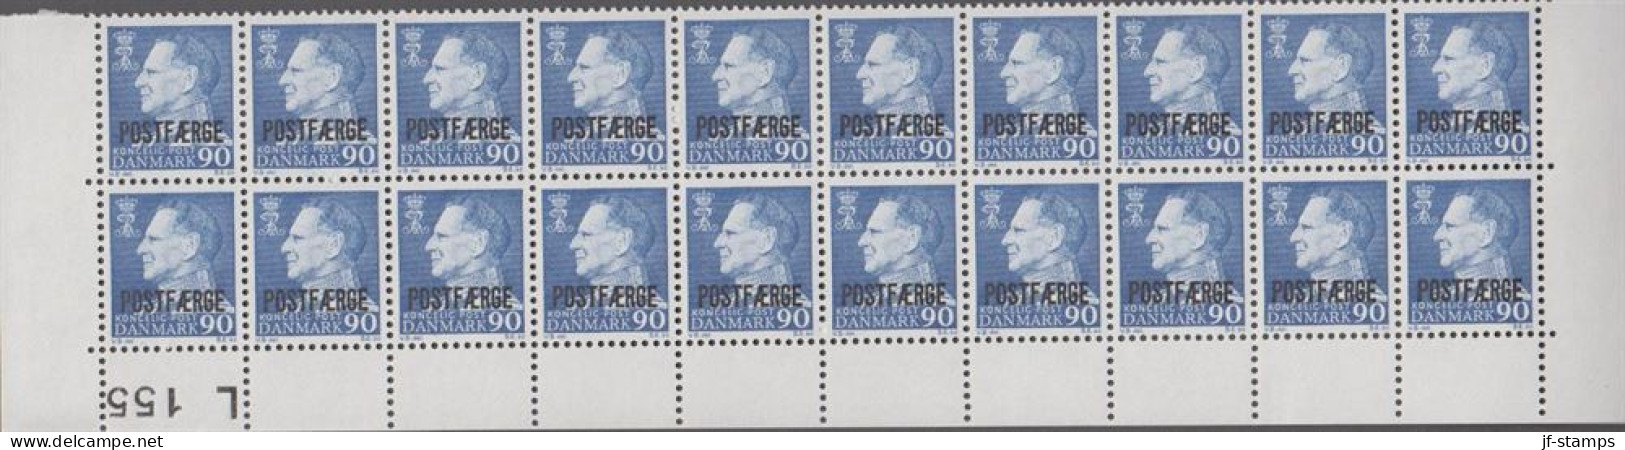 1970. Postfærge. 90 øre Frederik Overprinted POSTFÆRGE In 20-block With Lower Margin L 155. ... (Michel PF43) - JF538518 - Parcel Post